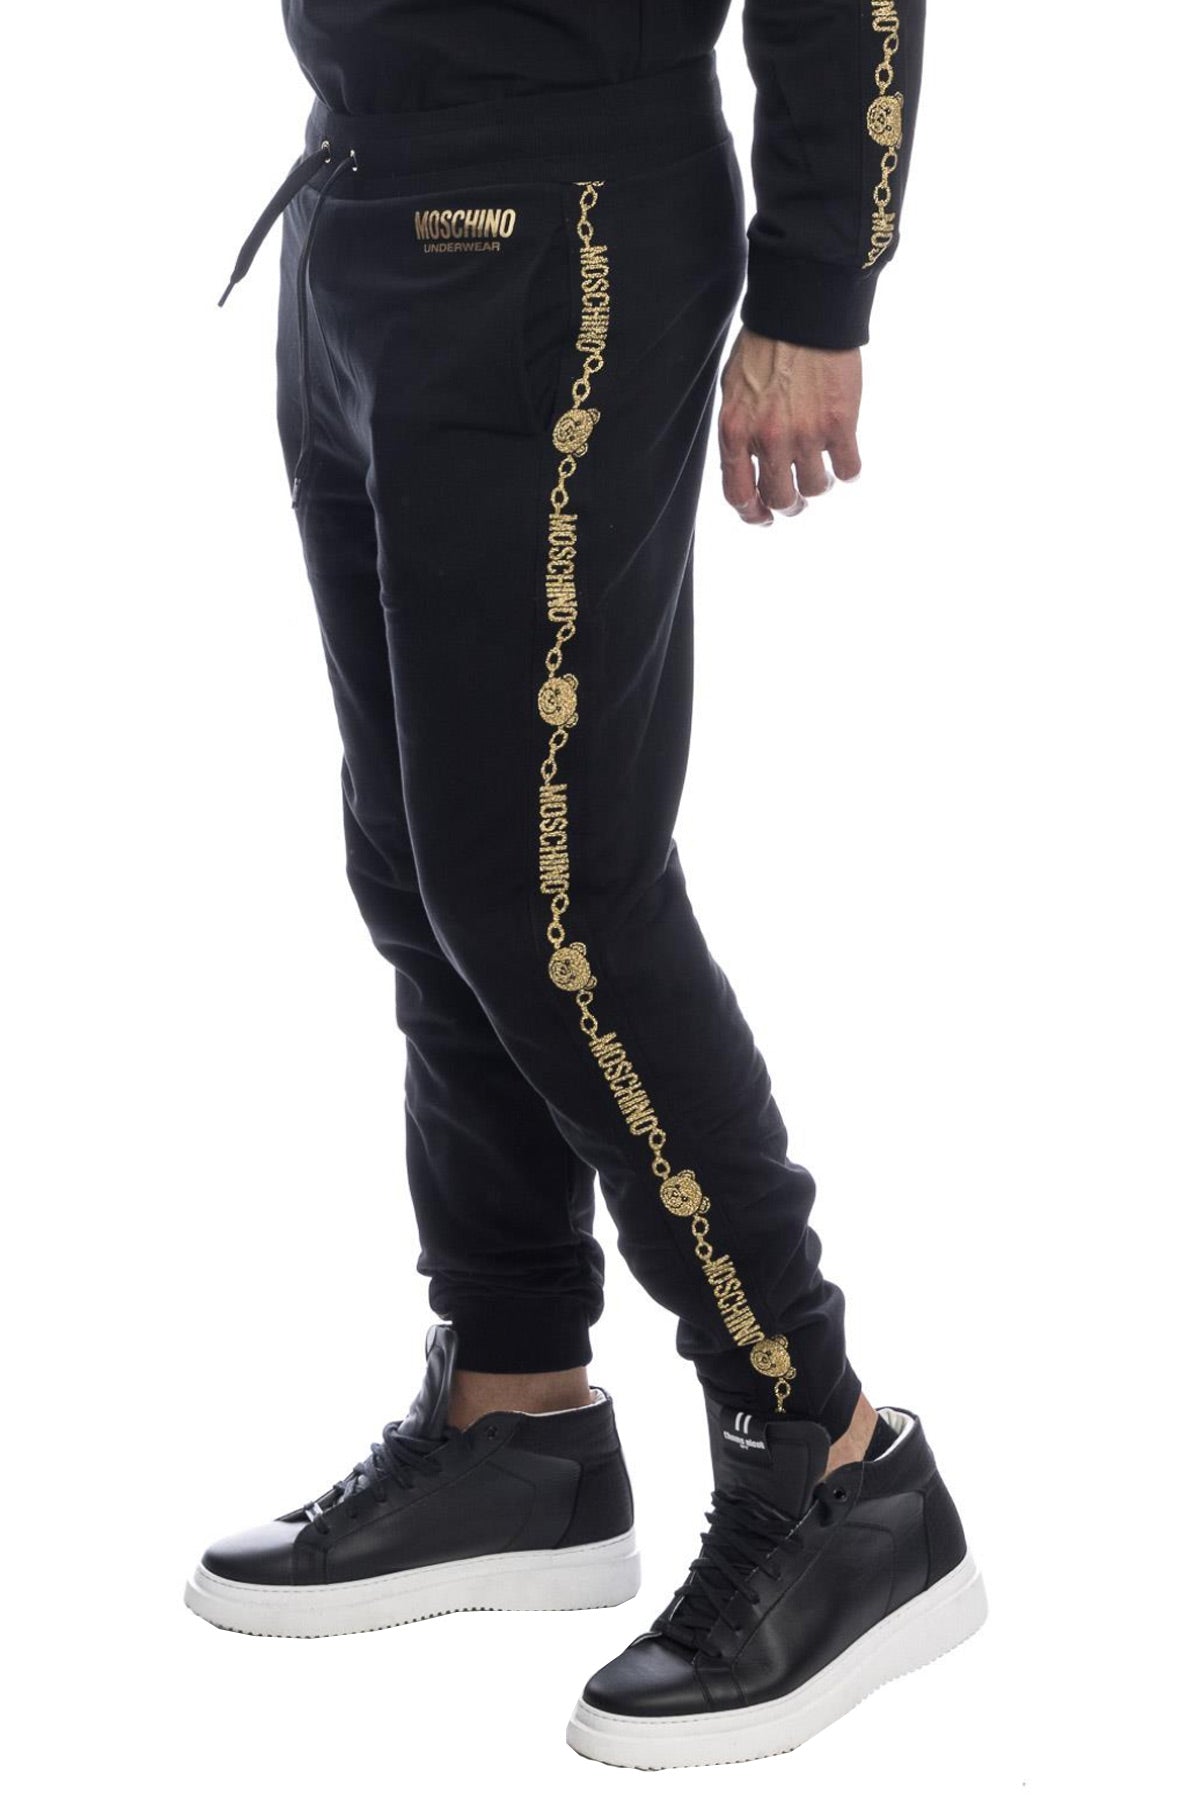 Pantaloni barbati Moschino - negru cu auriu